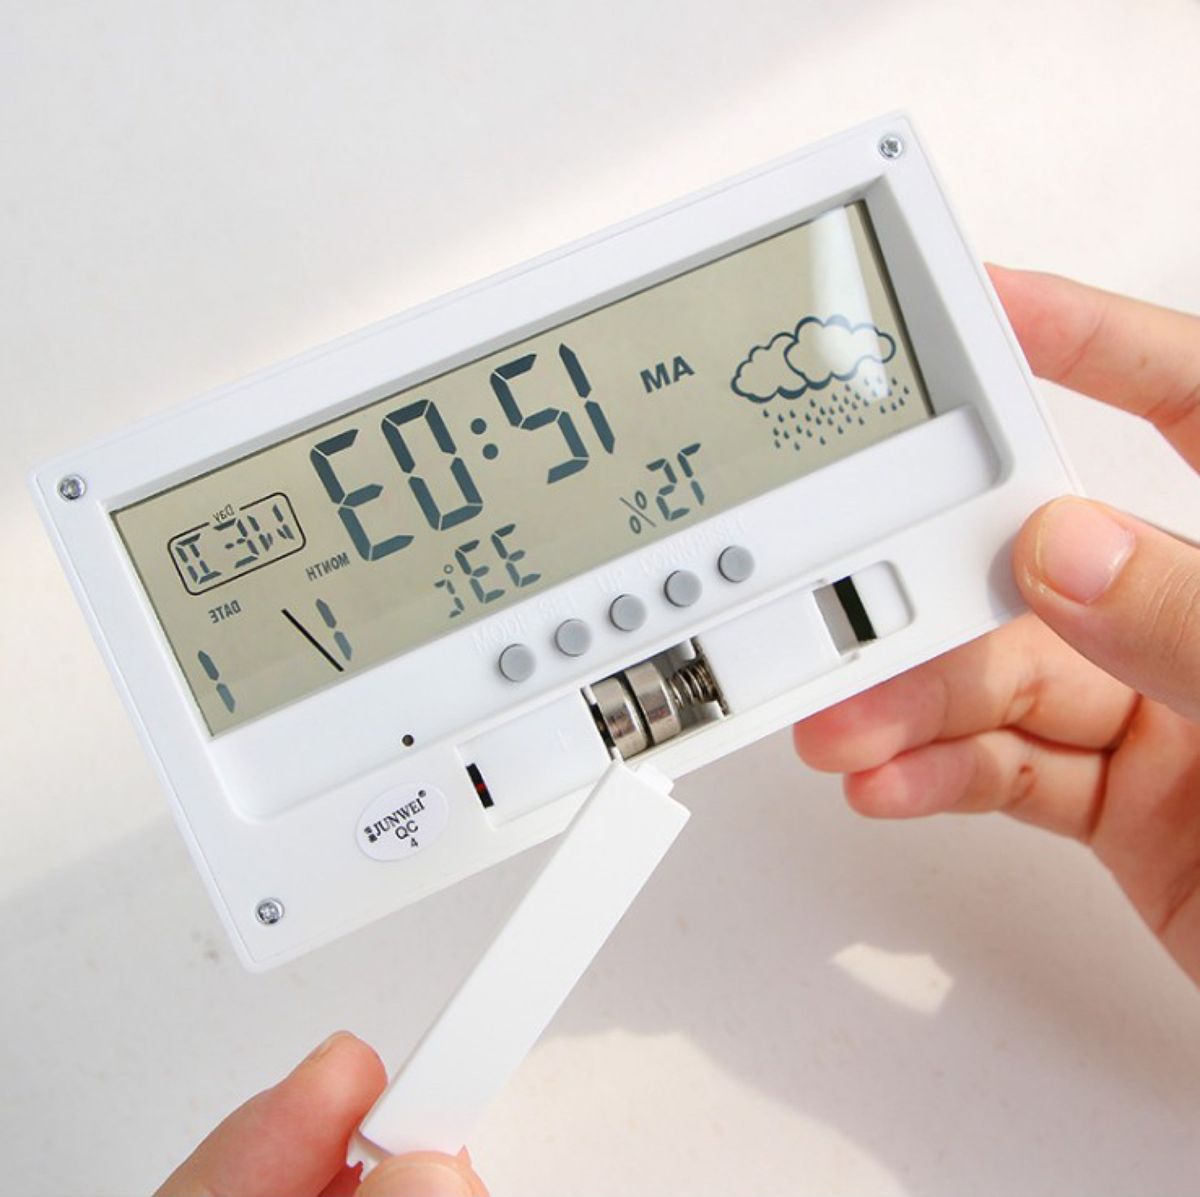 目覚まし時計 温度 湿度 多機能 デジタル 置き時計 白 4 - 置時計